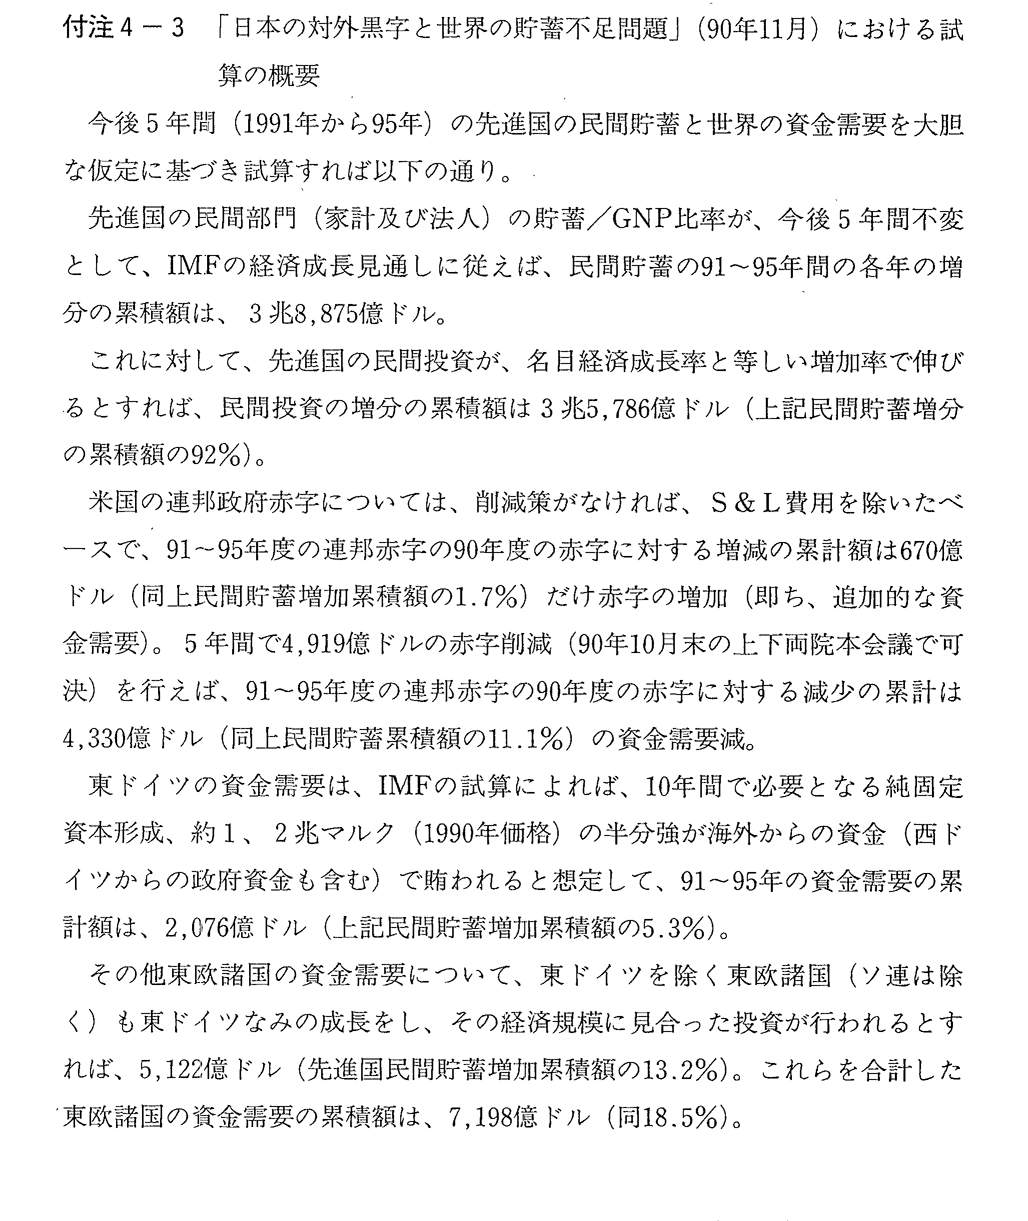 付注4-3　「日本の対外黒字と世界の貯蓄不足問題」(90年11月)における試算の概要